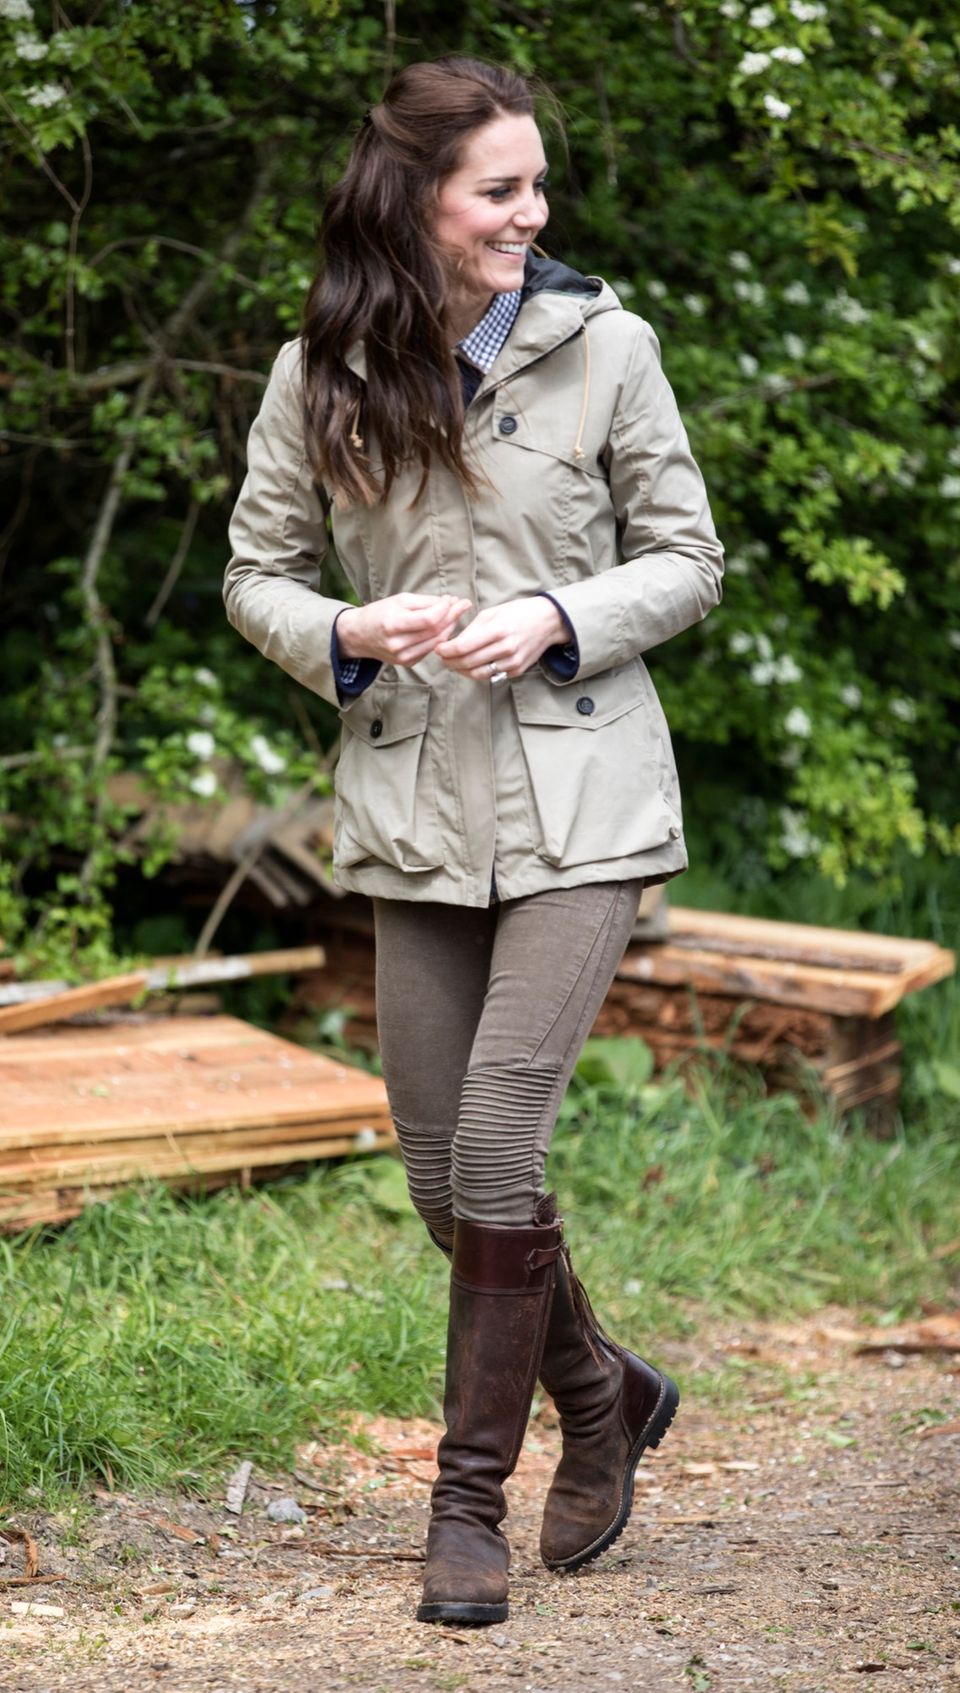 Kate Middleton besucht mit ihren Stiefeln eine Farm